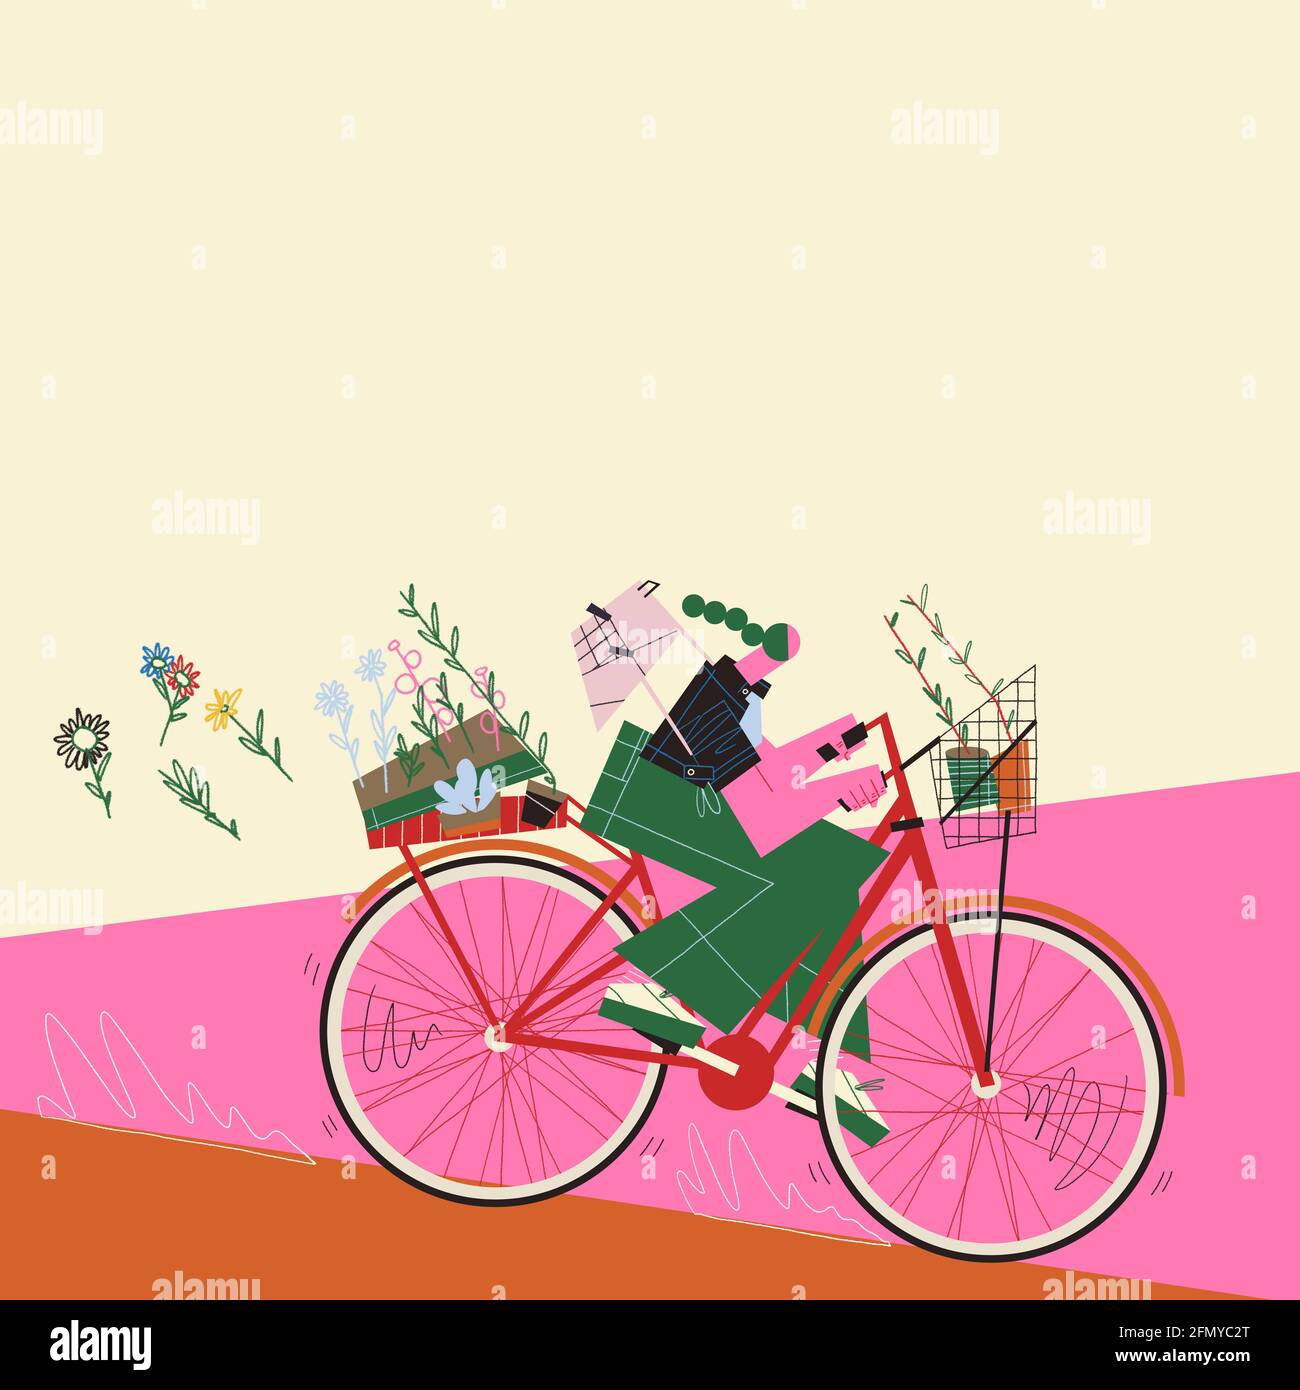 Joven mujer adulta montando su bicicleta transportando plantas y macetas a través de la calle moviéndose rápidamente. Concepto de ecologismo y ecologismo. Foto de stock